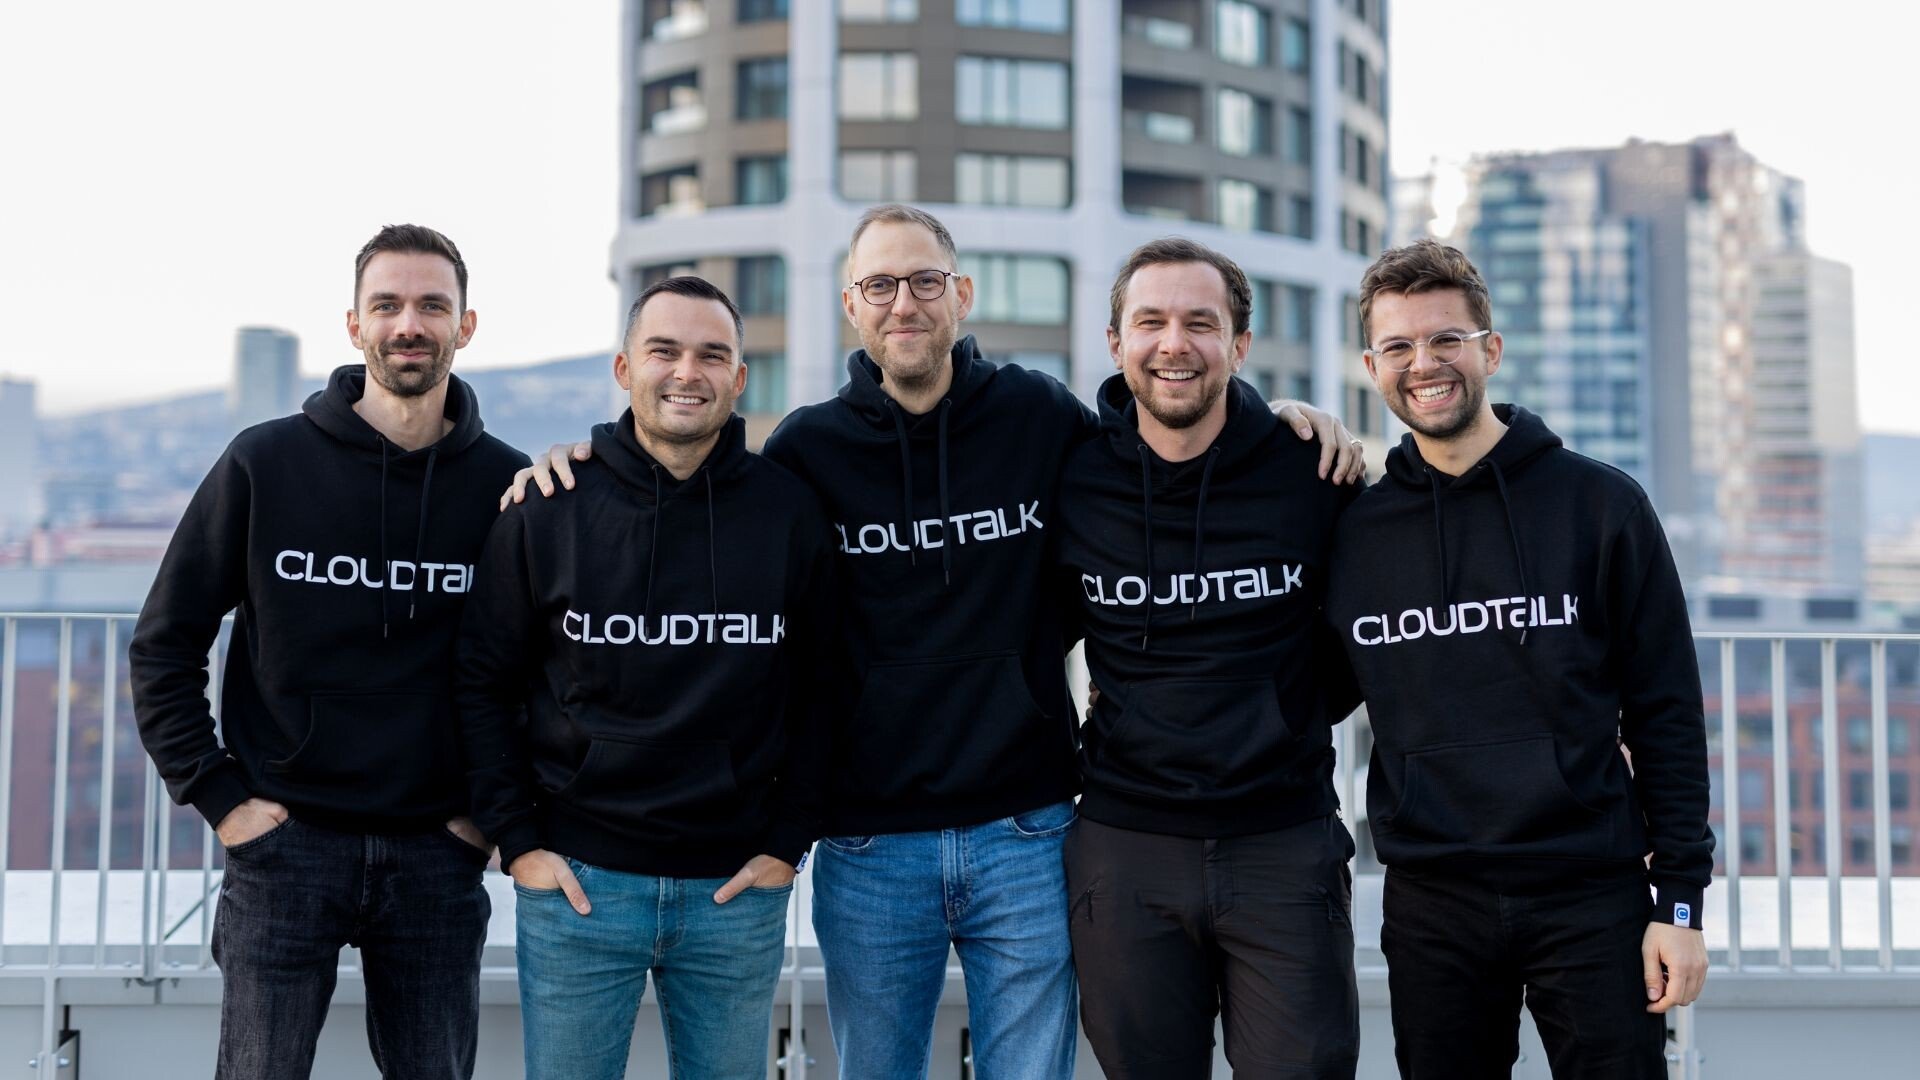 Slováci z CloudTalk hlásia masívnu investíciu. 26 miliónov ich má posunúť na líderskú pozíciu